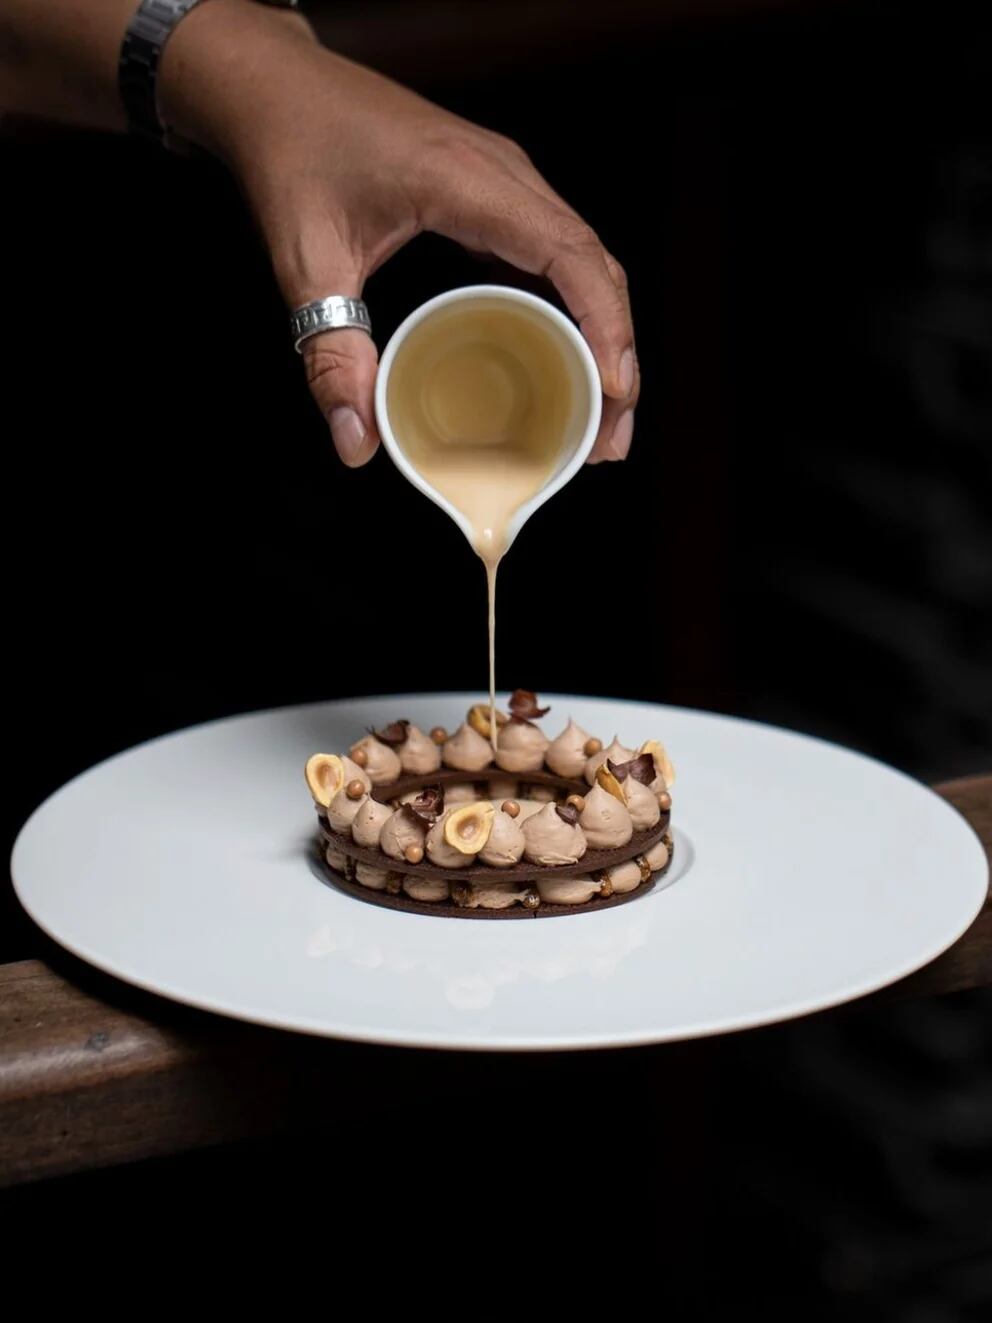 Sud 777, el restaurante mexicano liderado por el chef Edgar Núñez continúa con sus apariciones en las listas culinarias (Instagram)
